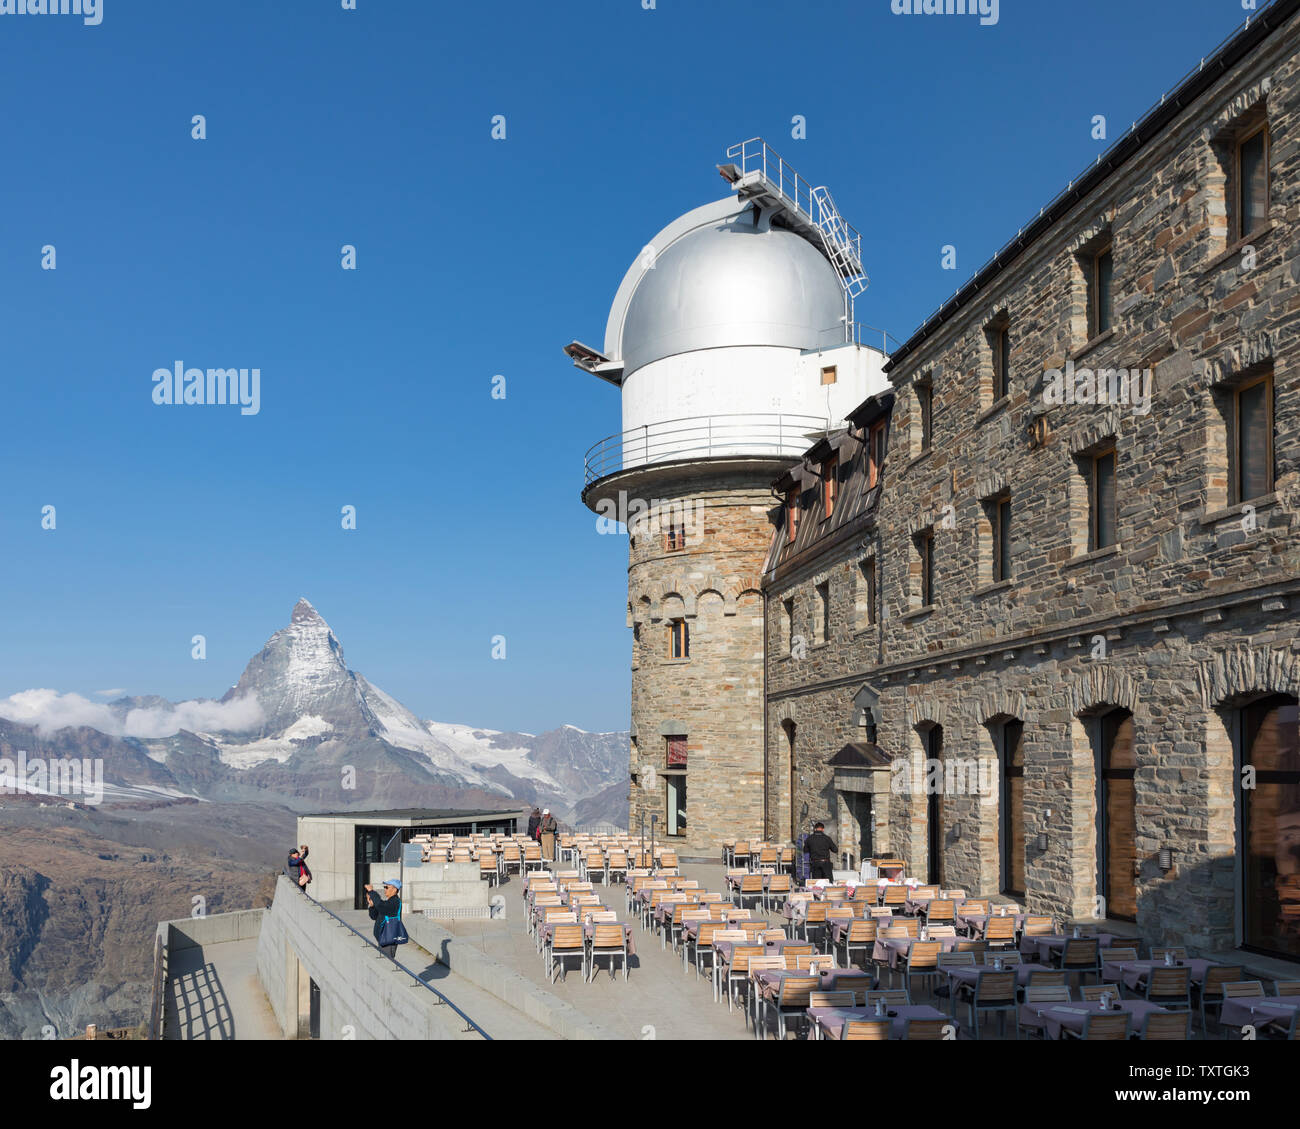 Gornergrat, Vallese, Svizzera: al di sotto di un osservatorio astronomico cupola è la terrazza del Kulmhotel, più alto d'Europa ristorante a 3100m. Foto Stock